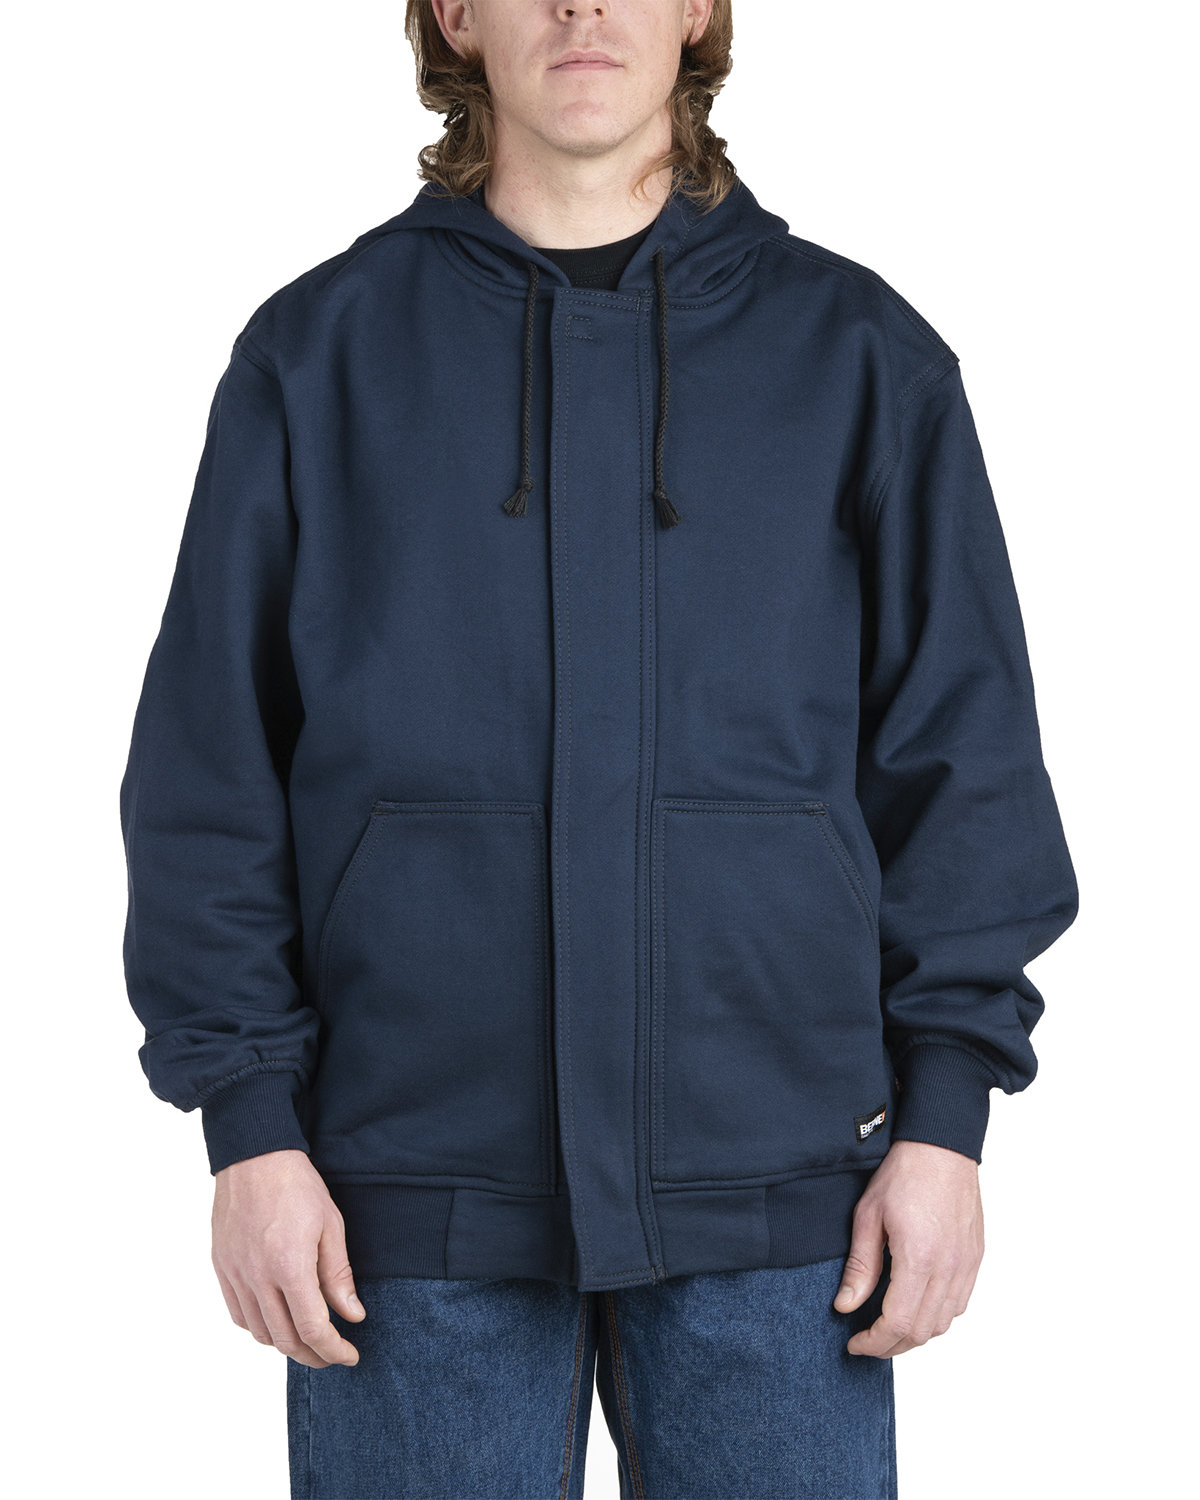 Mens Flame Resistant Full-Zip Hooded Sweatshirt-